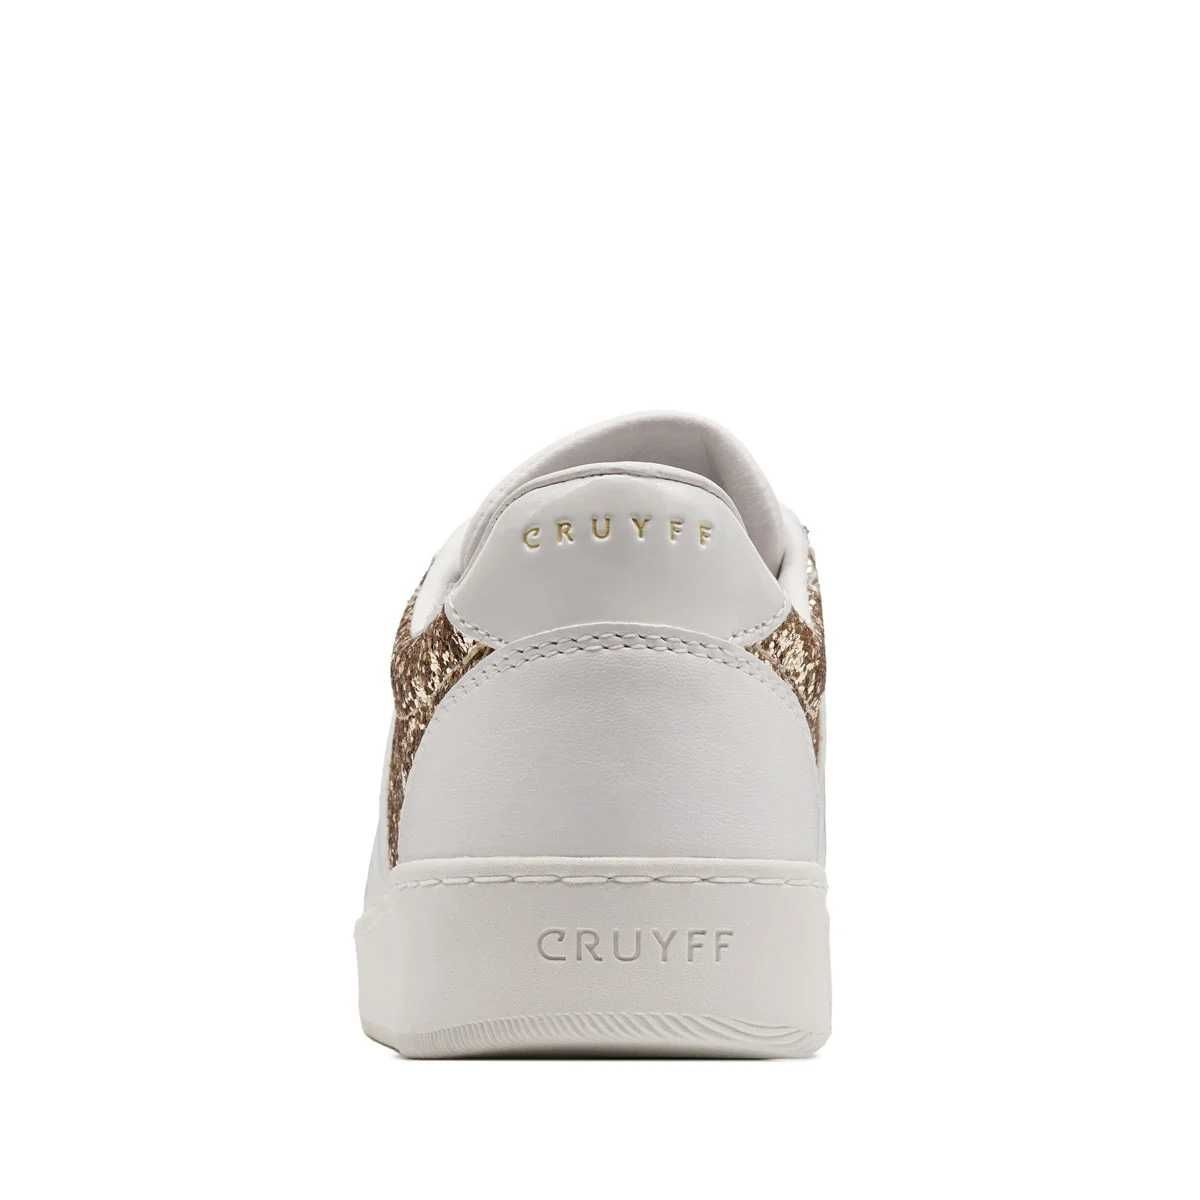 Cruyff - Citta Glam №37 Оригинал Код 967